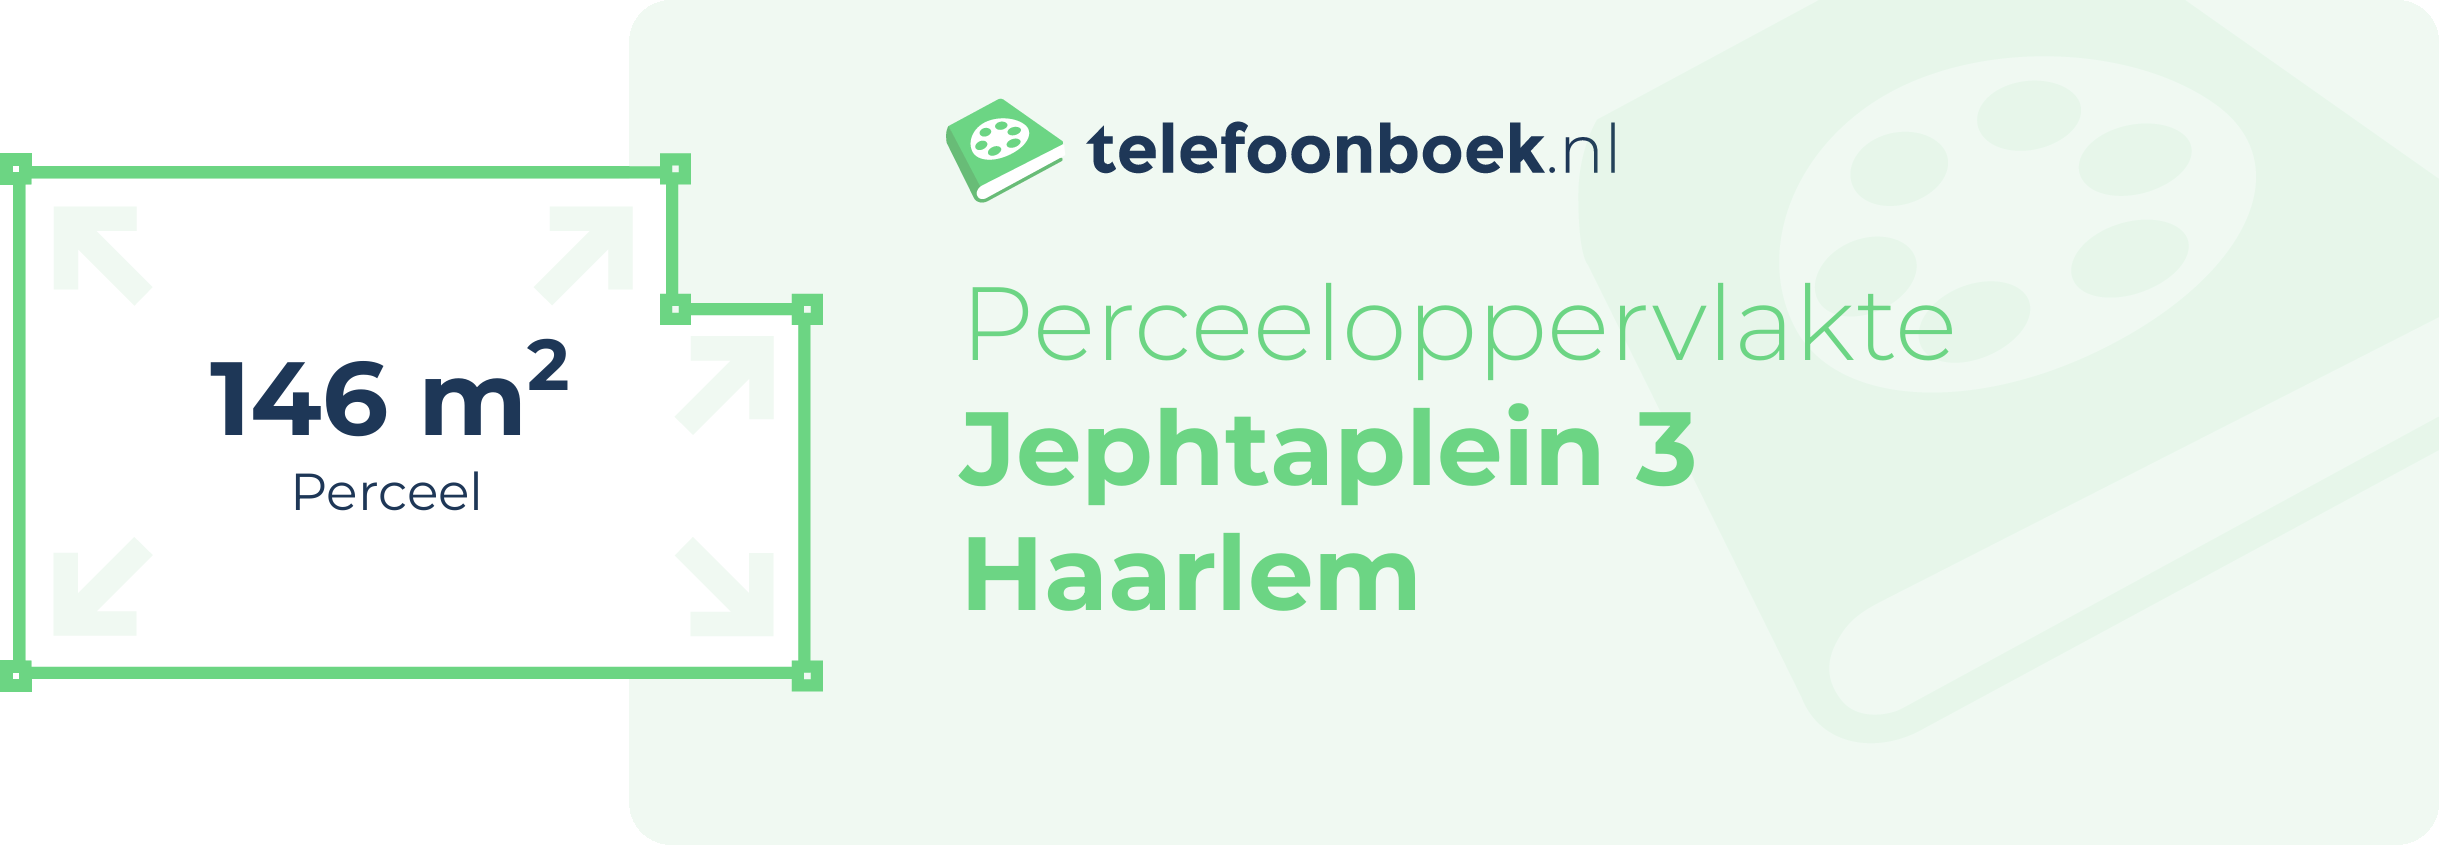 Perceeloppervlakte Jephtaplein 3 Haarlem